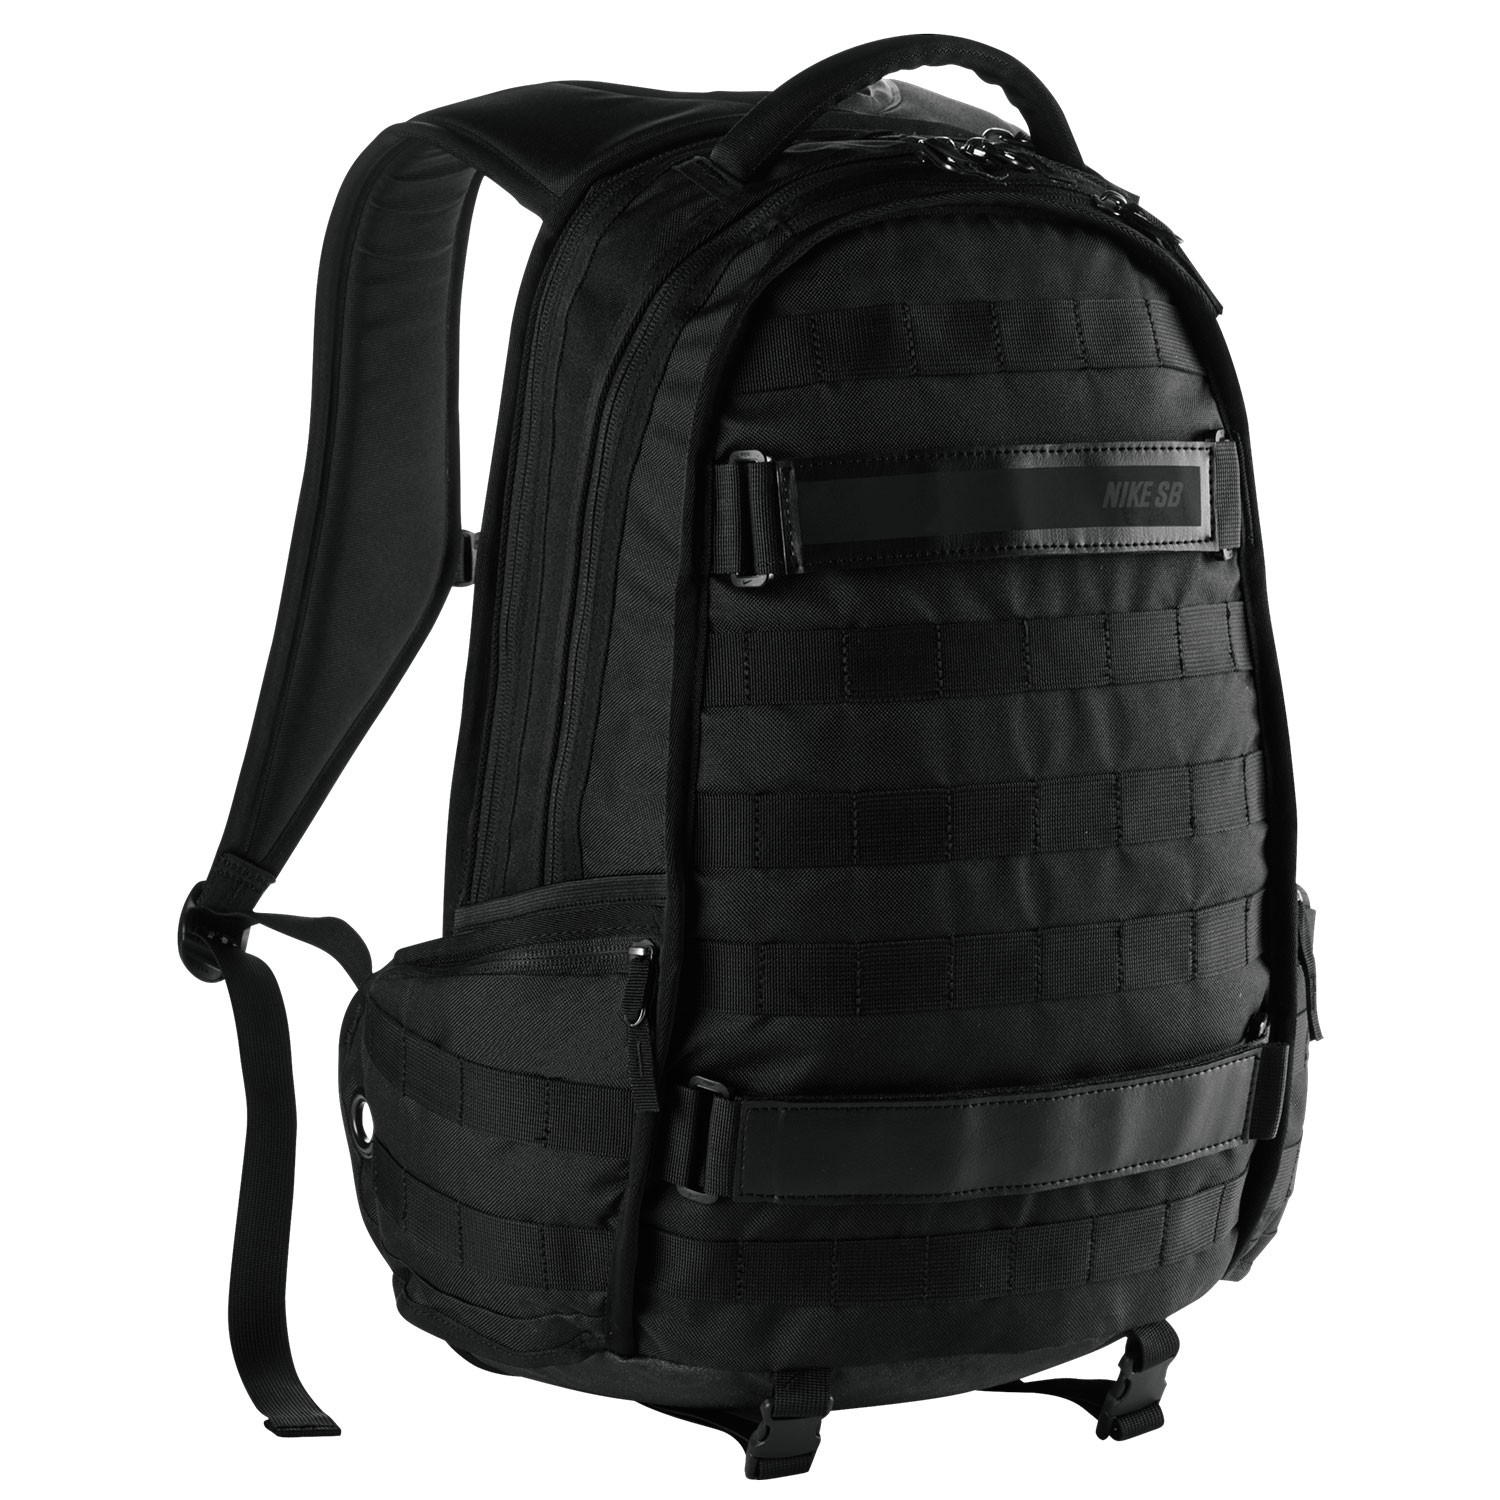 nike sb rpm backpack 2016